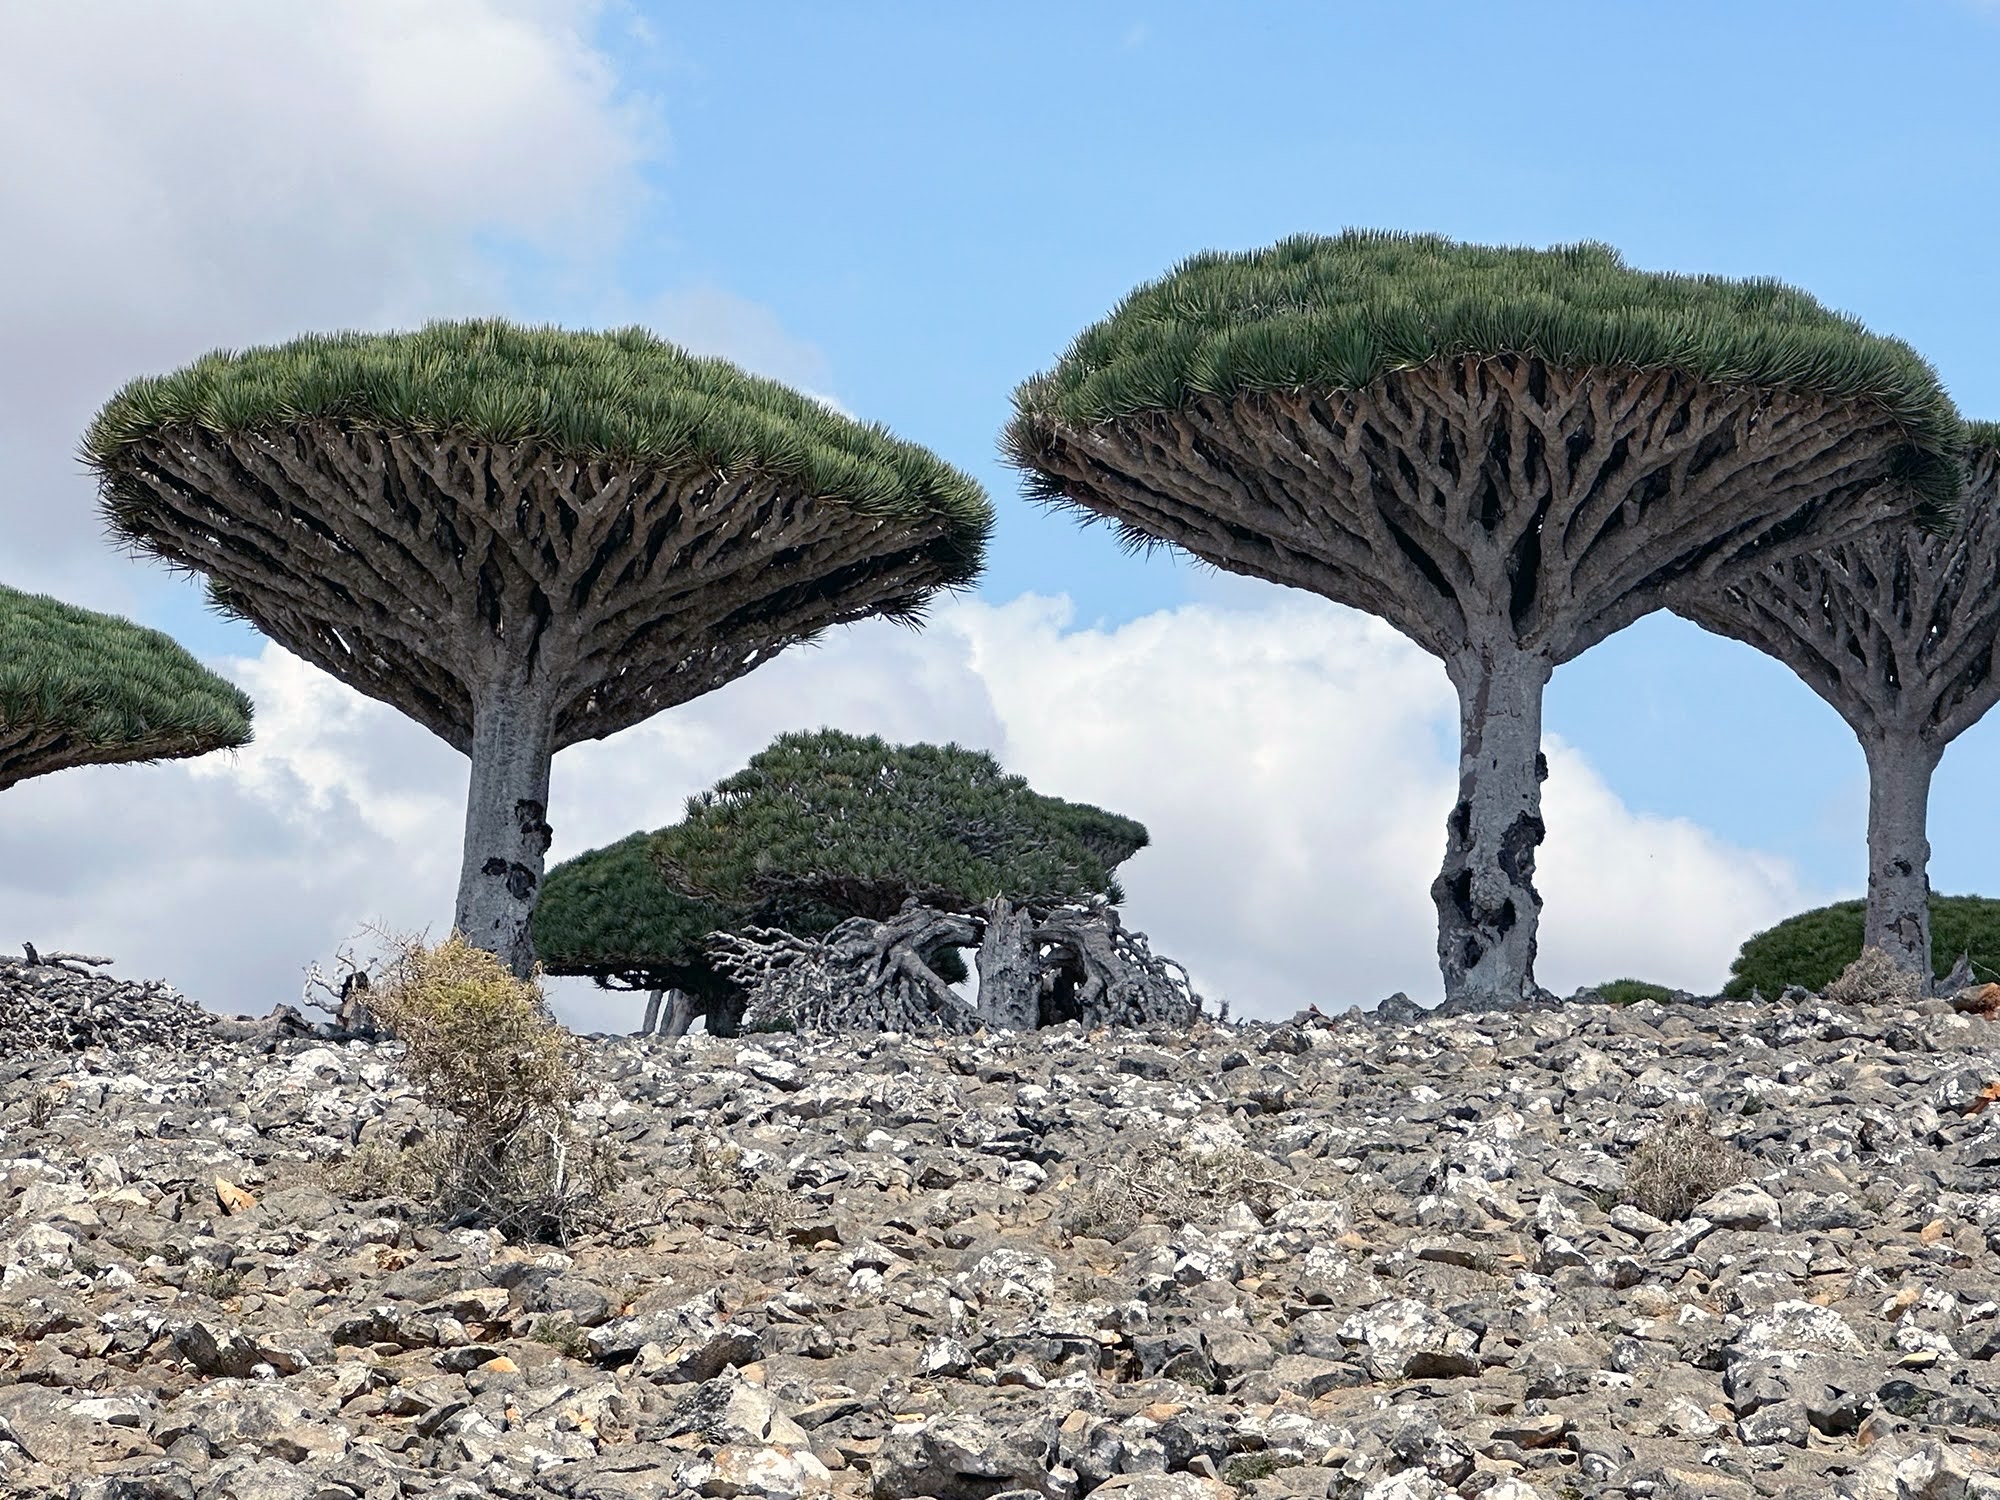 Fotografia degli alberi del drago, tipici dell'isola di Socotra, in un terreno arido e roccioso